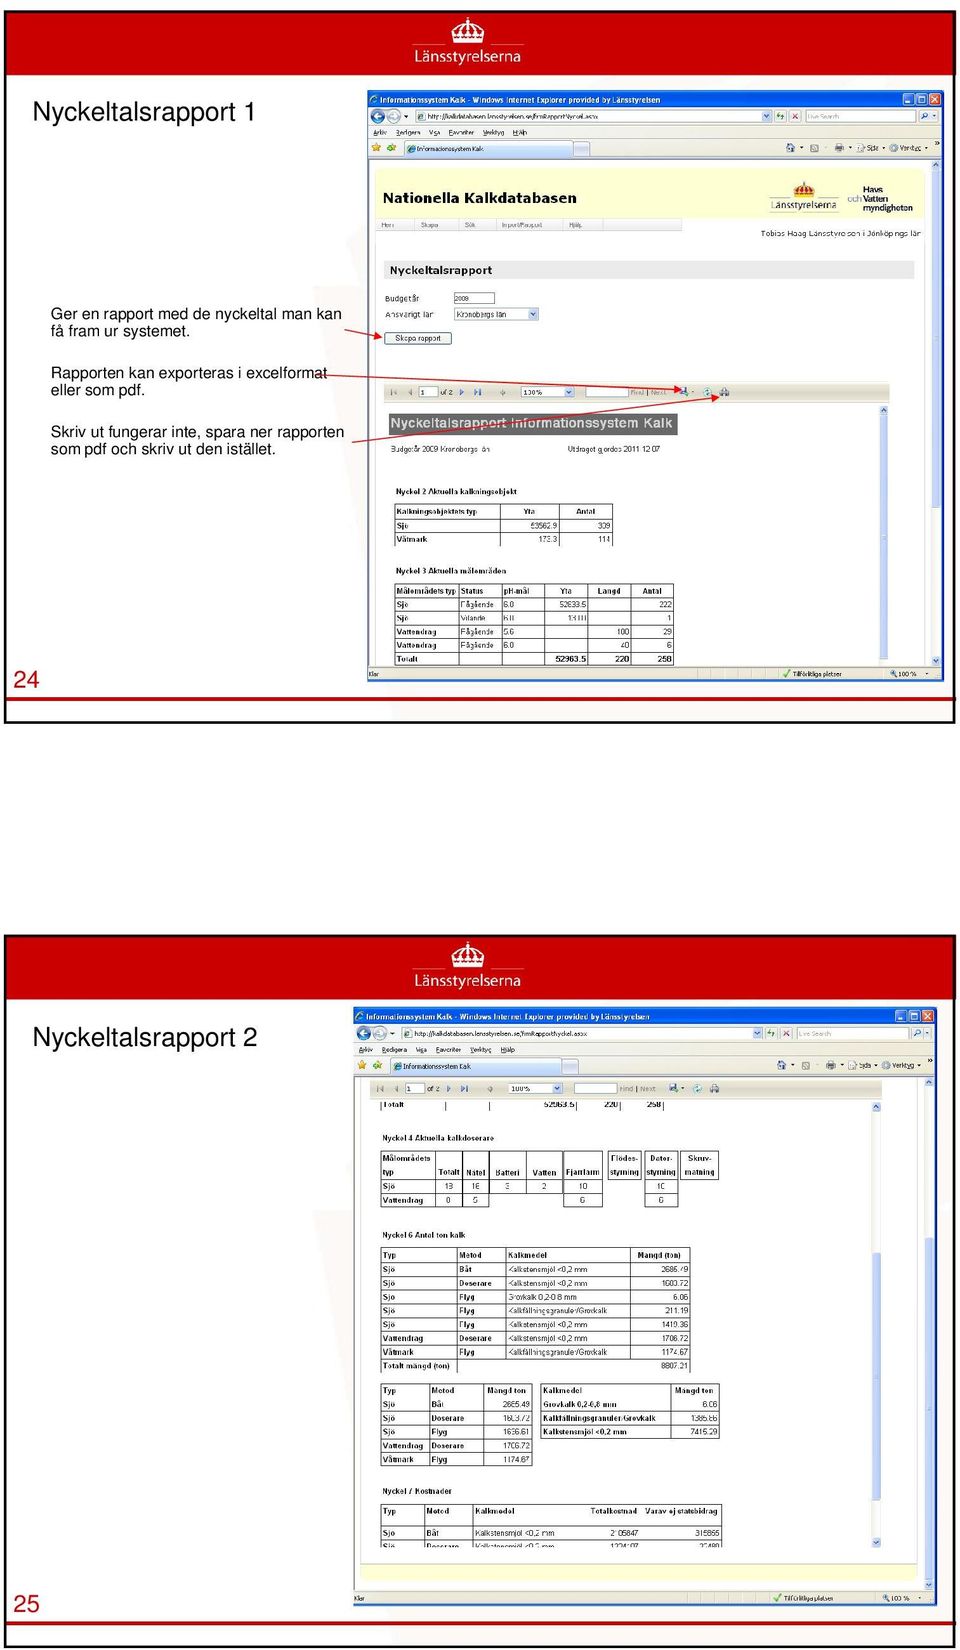 Rapporten kan exporteras i excelformat eller som pdf.